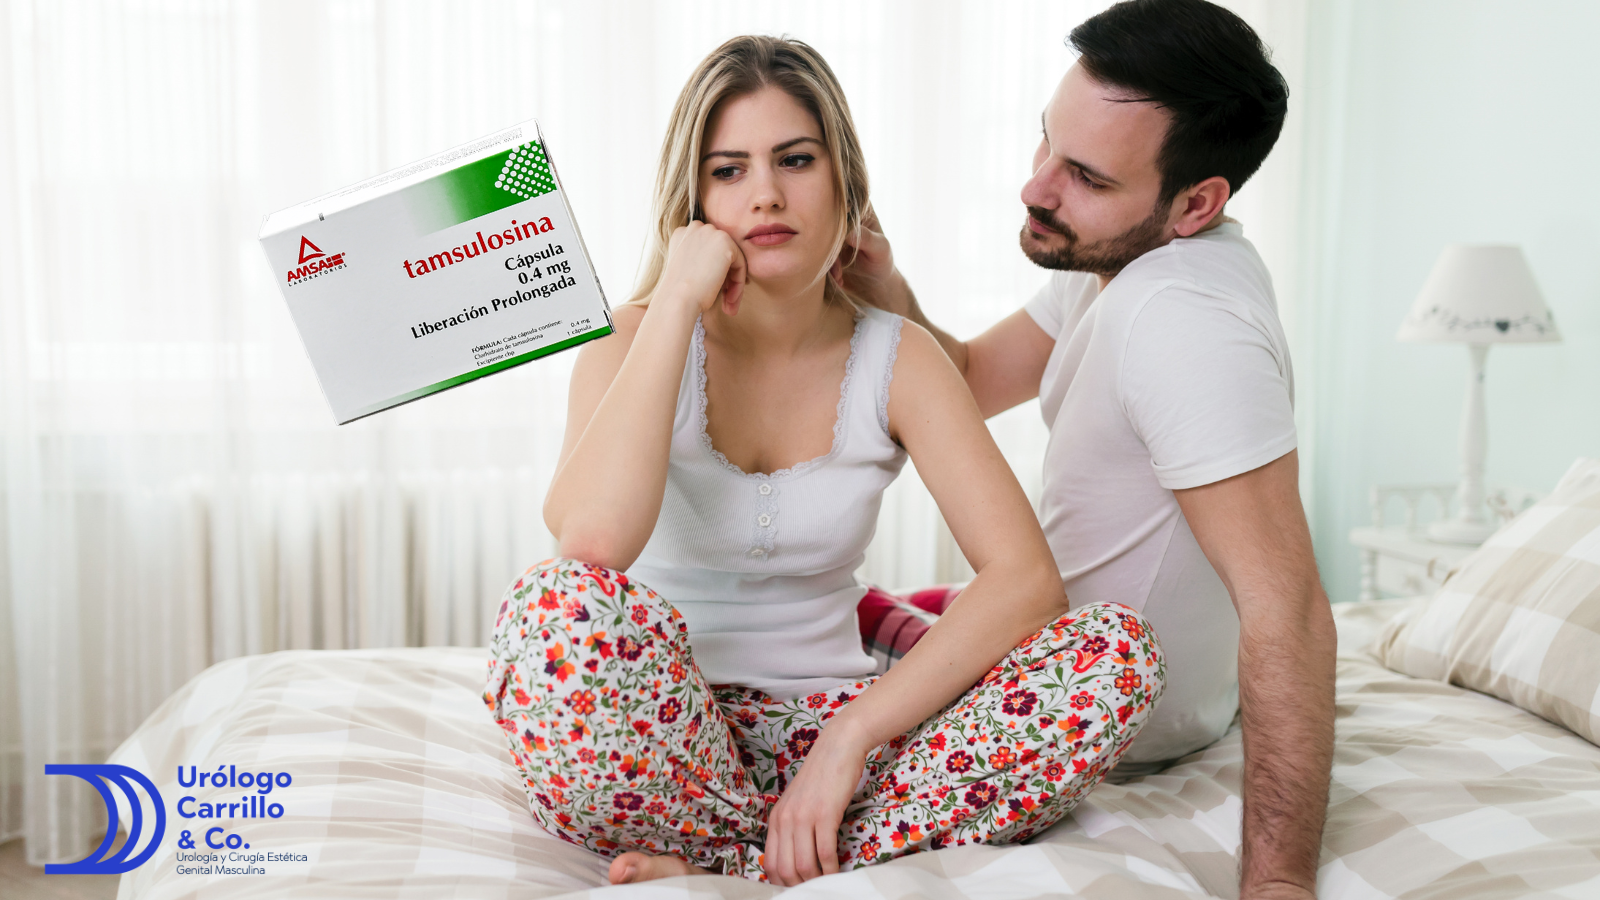 La tamsulosina se utiliza para tratar síntomas urinarios pero... puede afectar tu sexualidad 